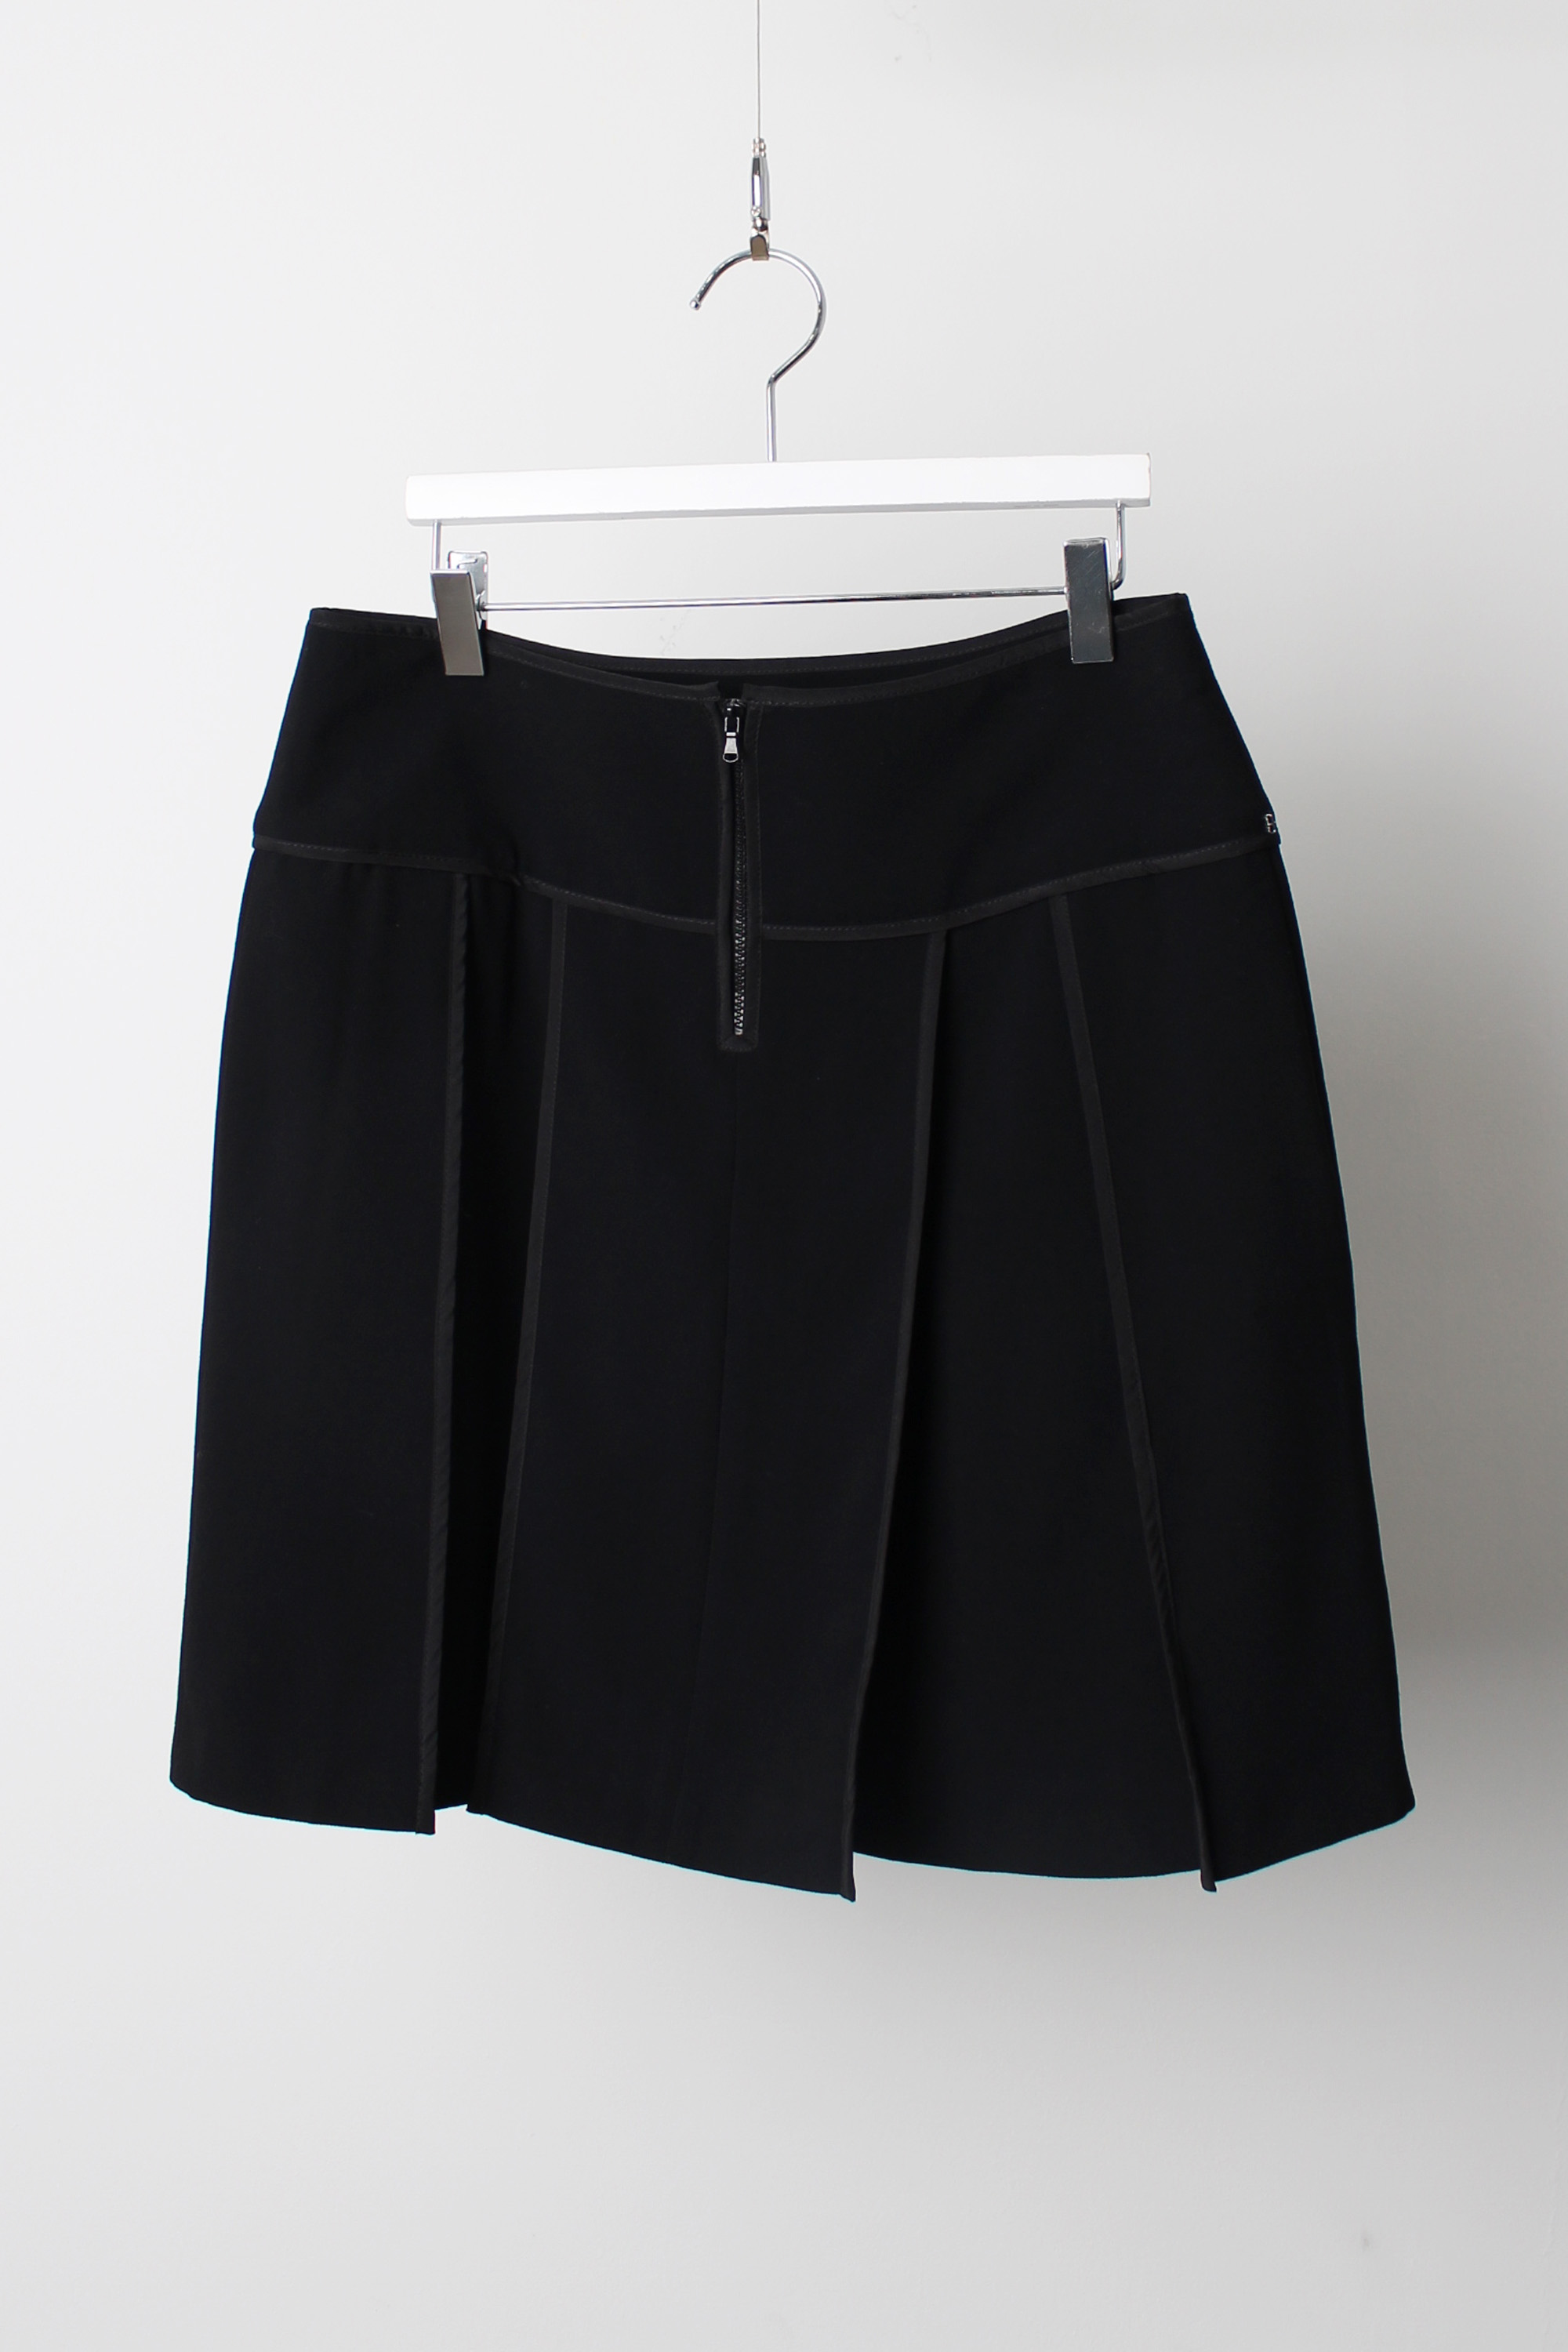 SPORTMAX mini skirt